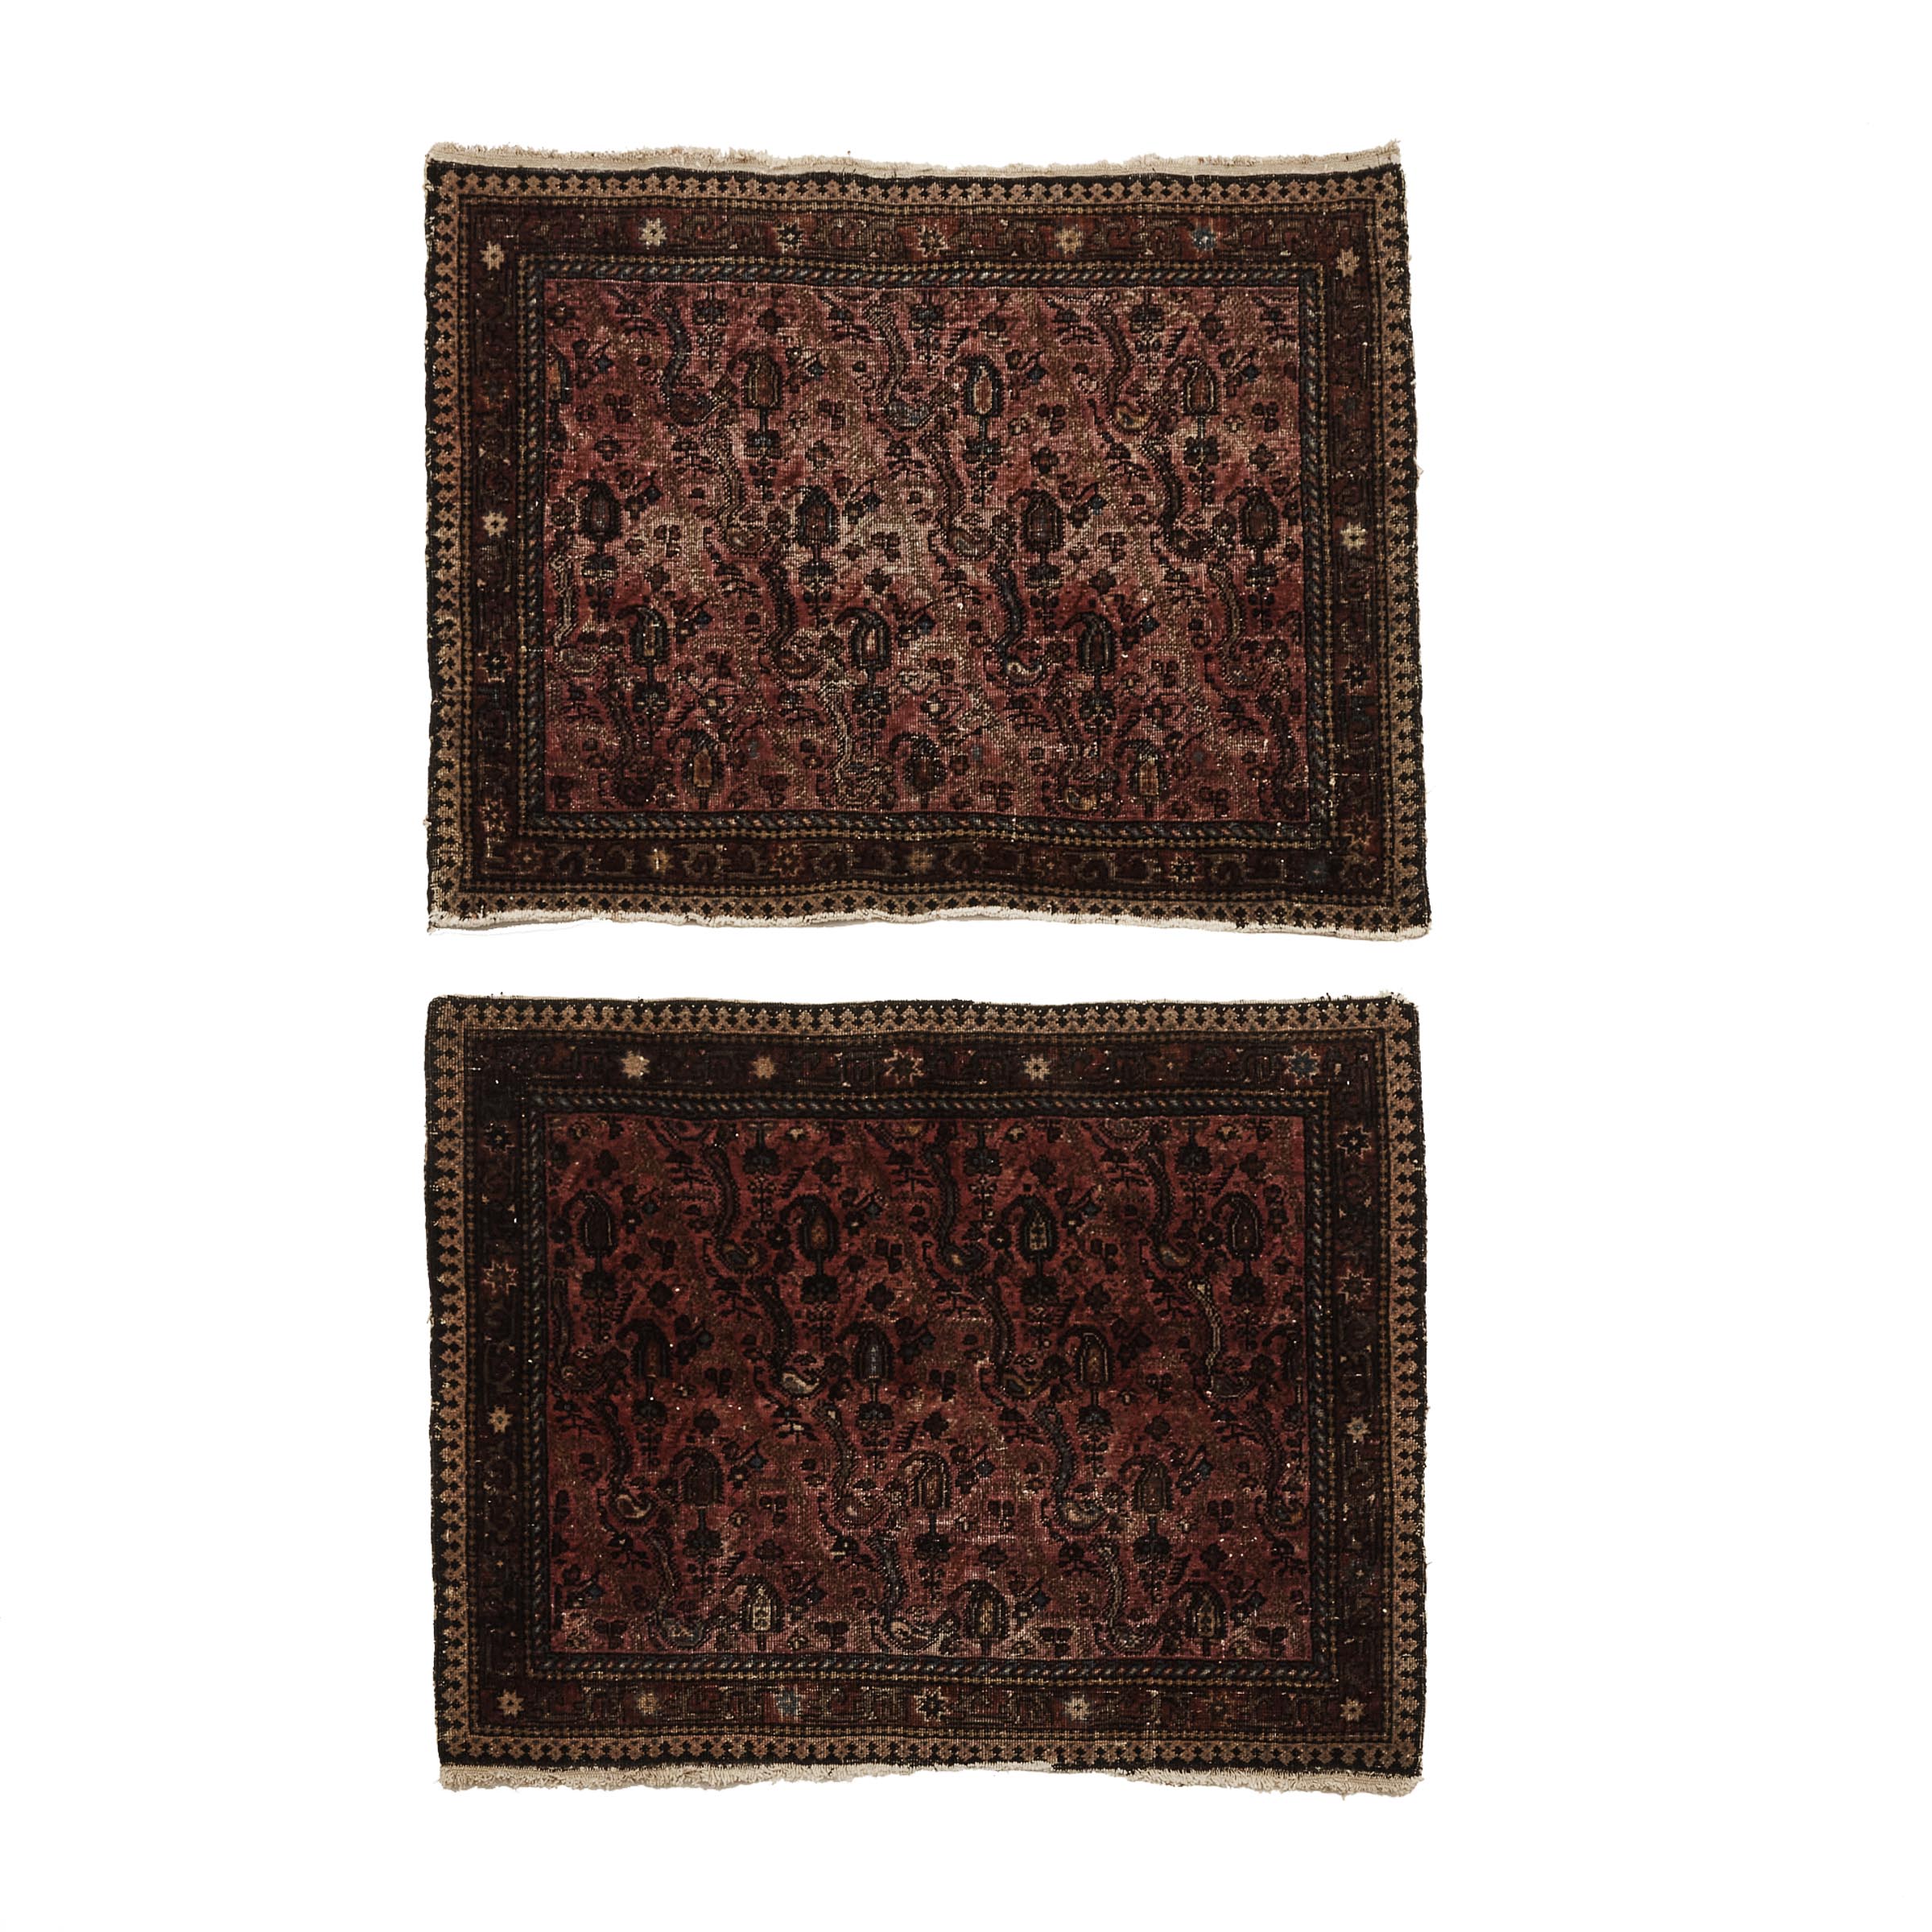 Pair of Fine Sarouk Samplers, Persian, c.1900